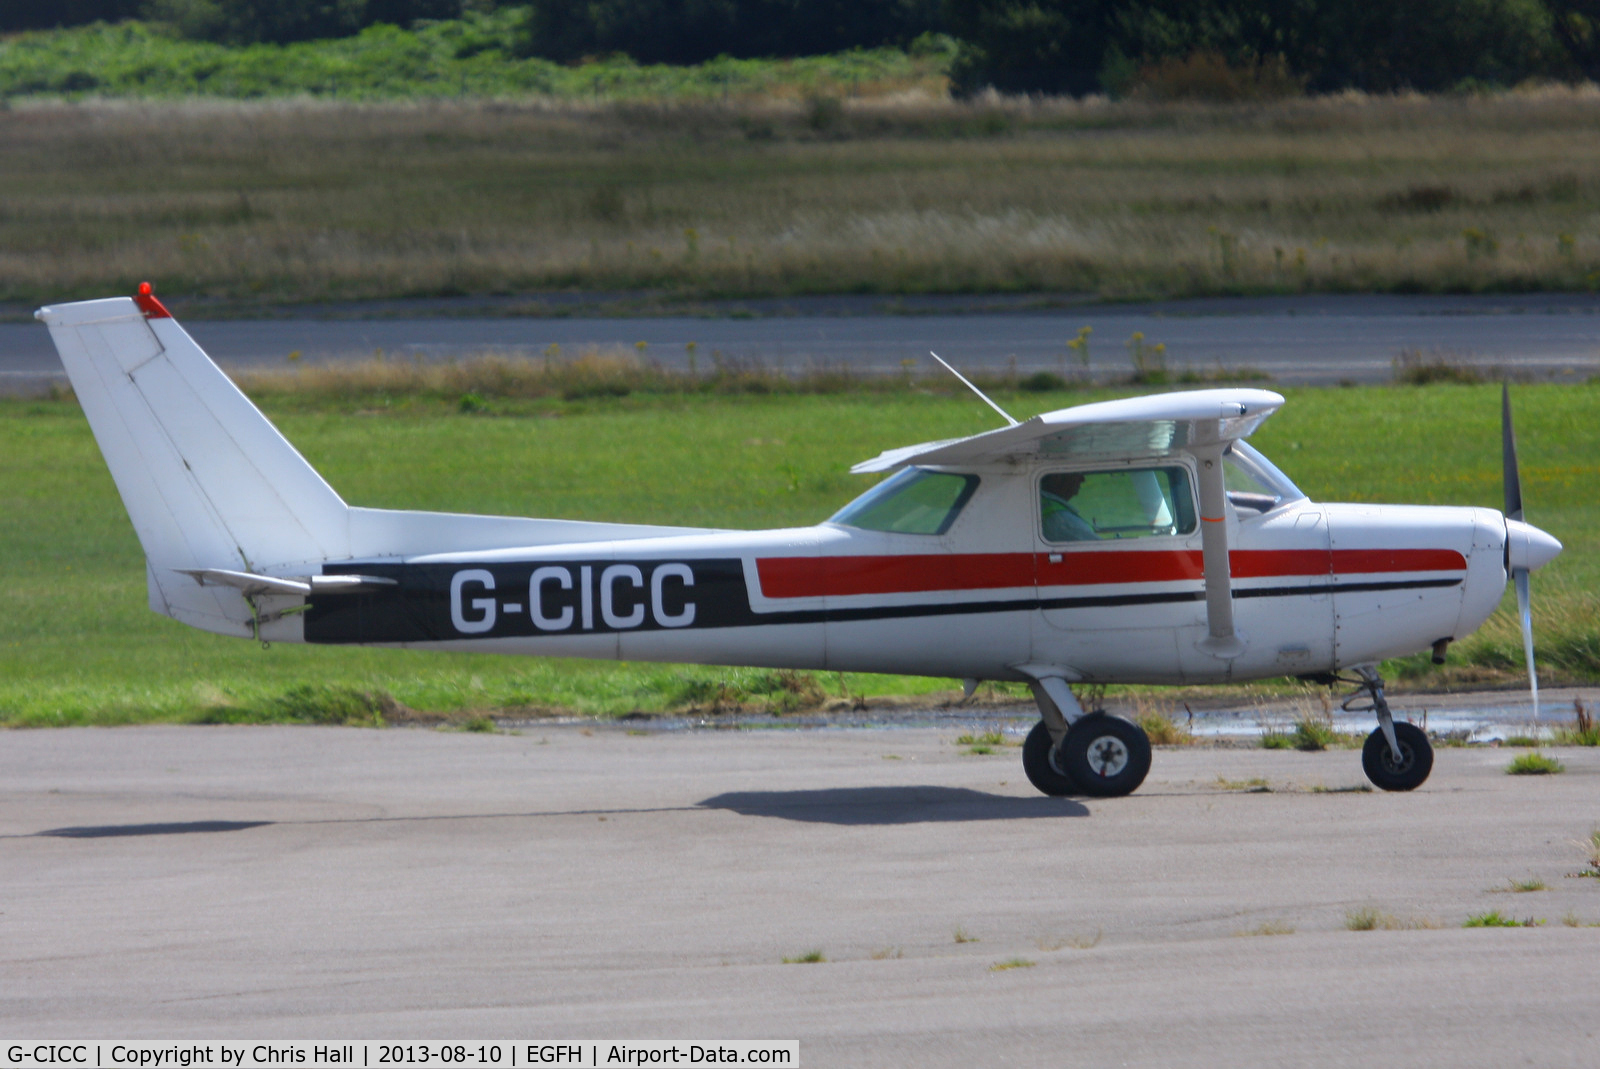 G-CICC, 1981 Cessna 152 C/N 152-85282, The Pilot Centre Ltd